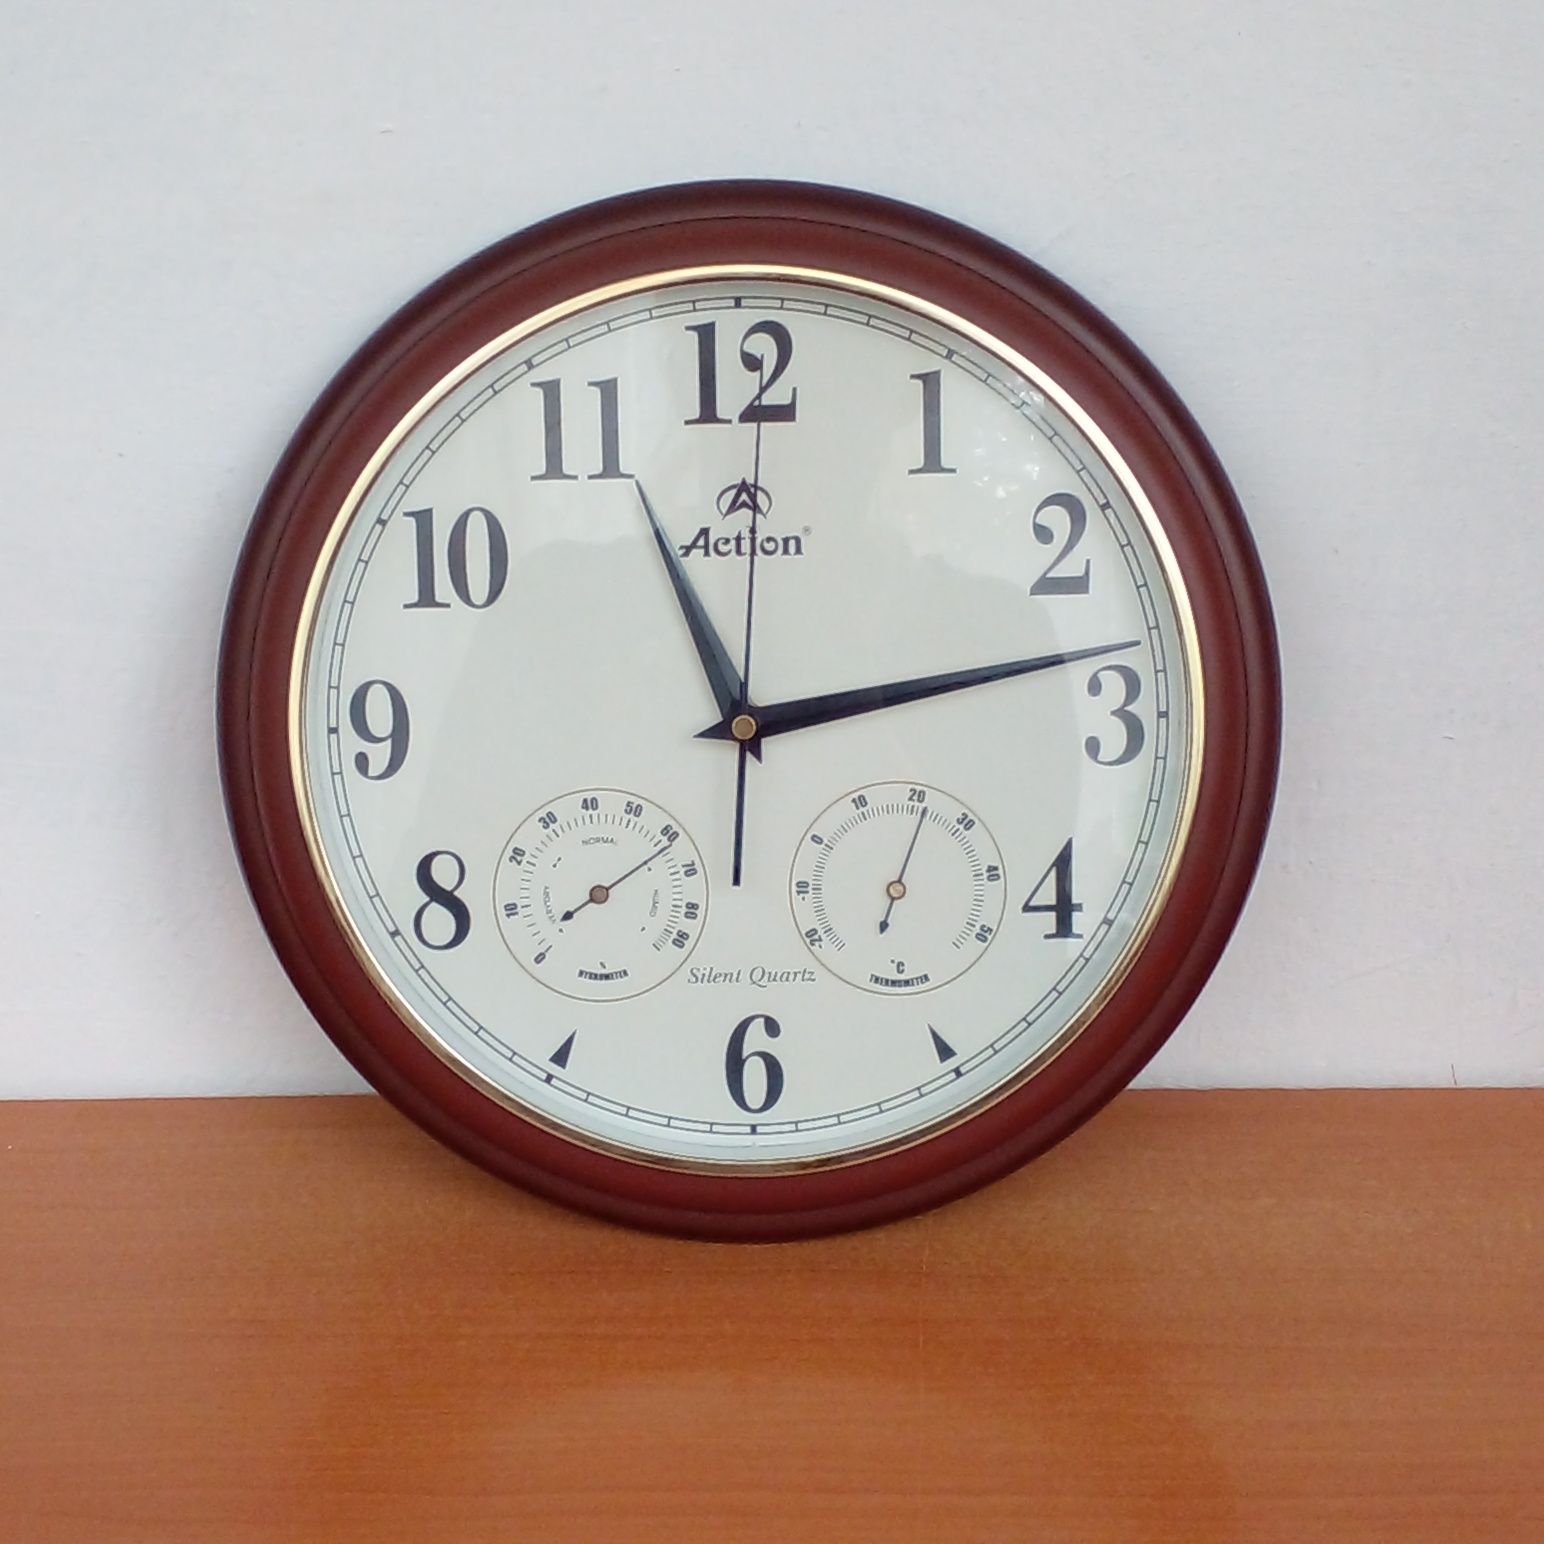 Настенные часы, с встроенным термометром и гигрометром (влажность)